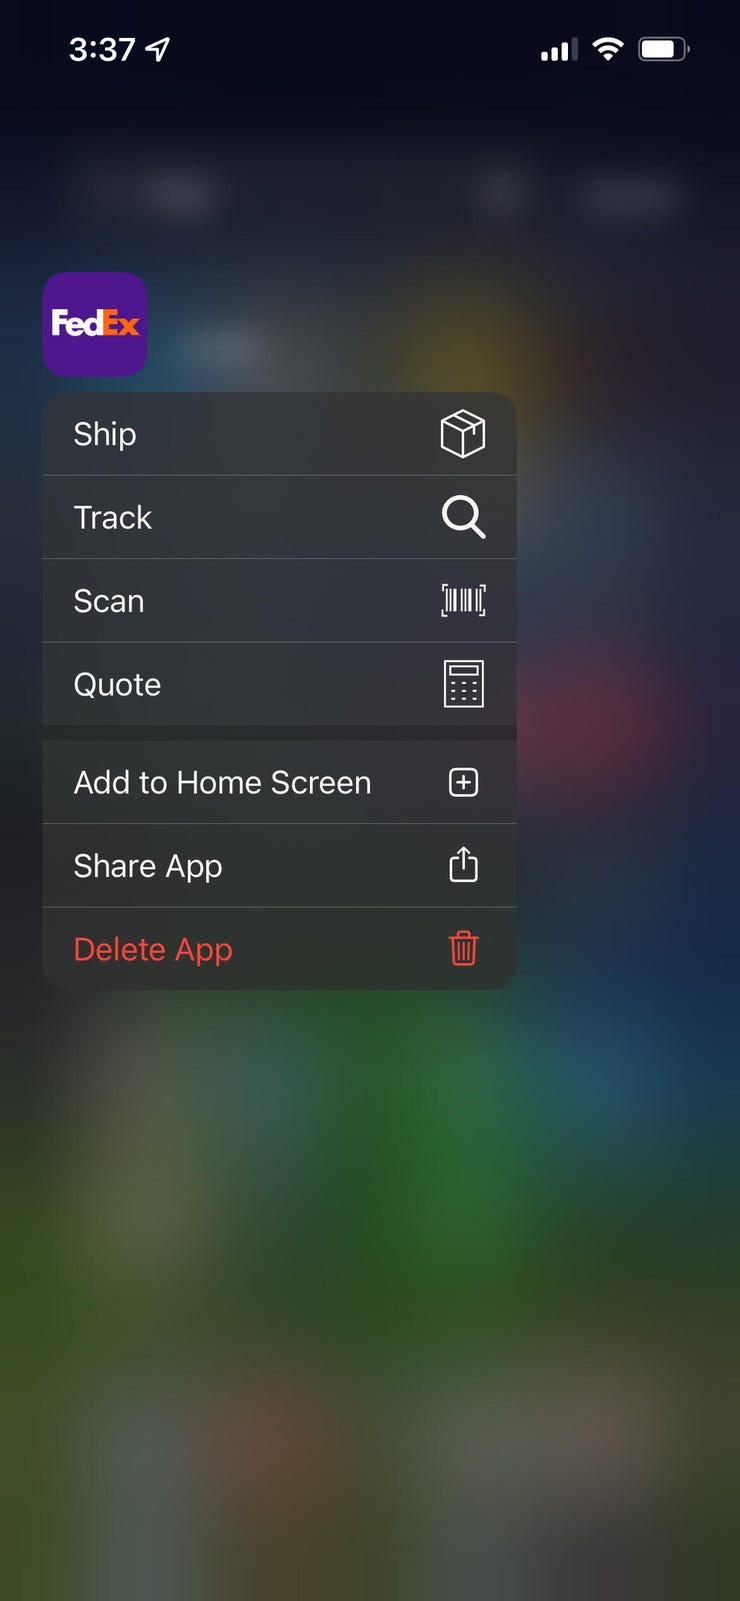 القائمة المنبثقة لإعادة إضافة التطبيقات إلى شاشتك الرئيسية في iOS 15